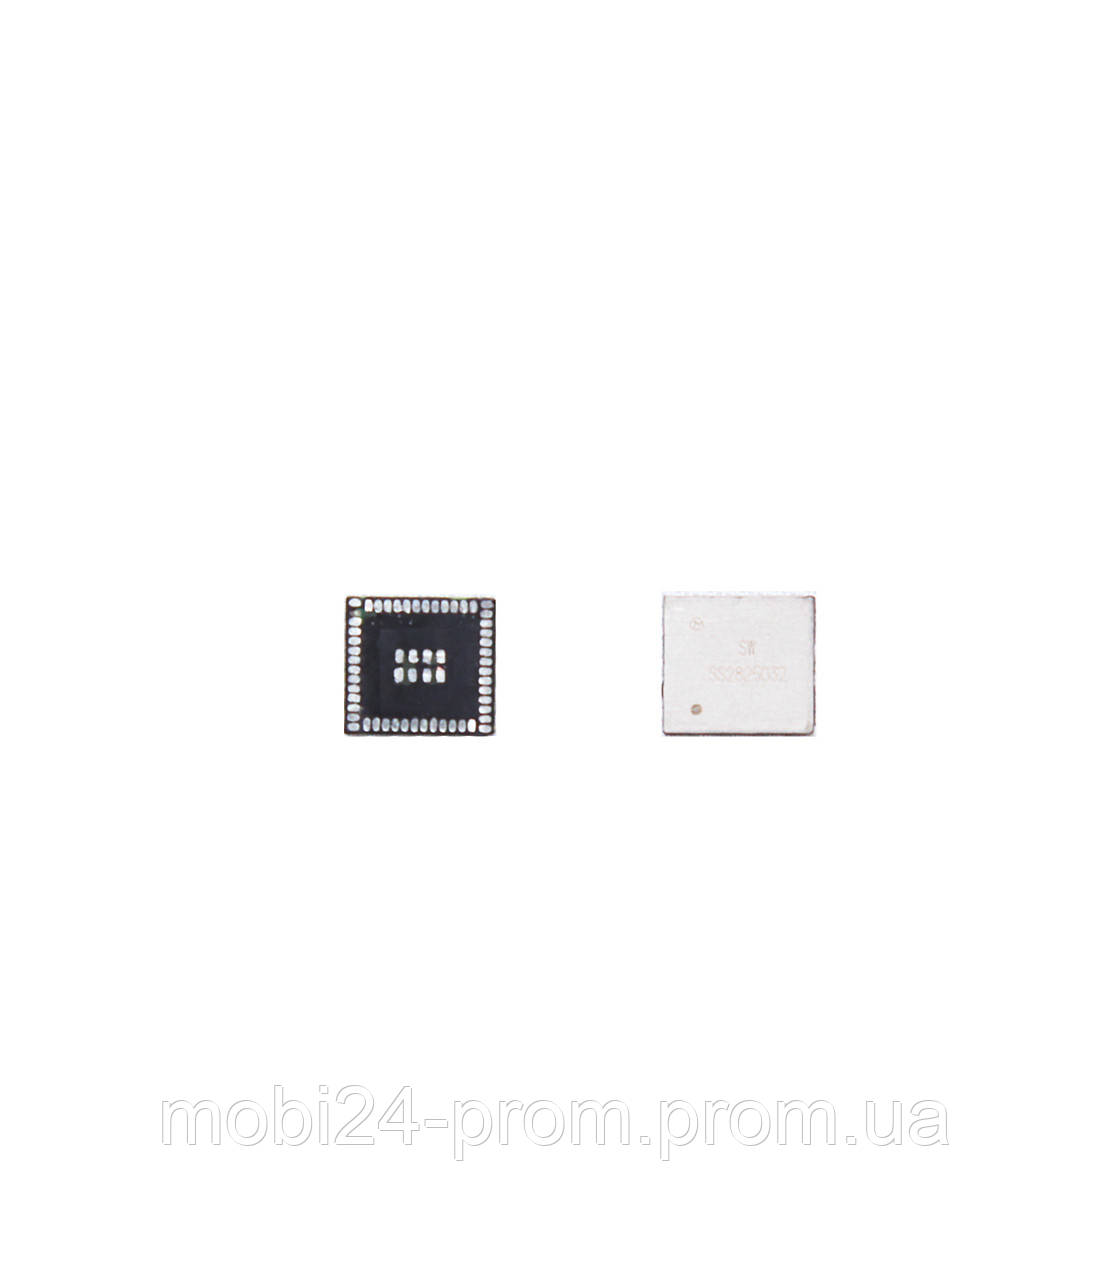 Mikroshema Apple Iphone 4s Ic Wifi V Kategorii Mikroshemy I Platy Dlya Mobilnyh Telefonov Na Bigl Ua